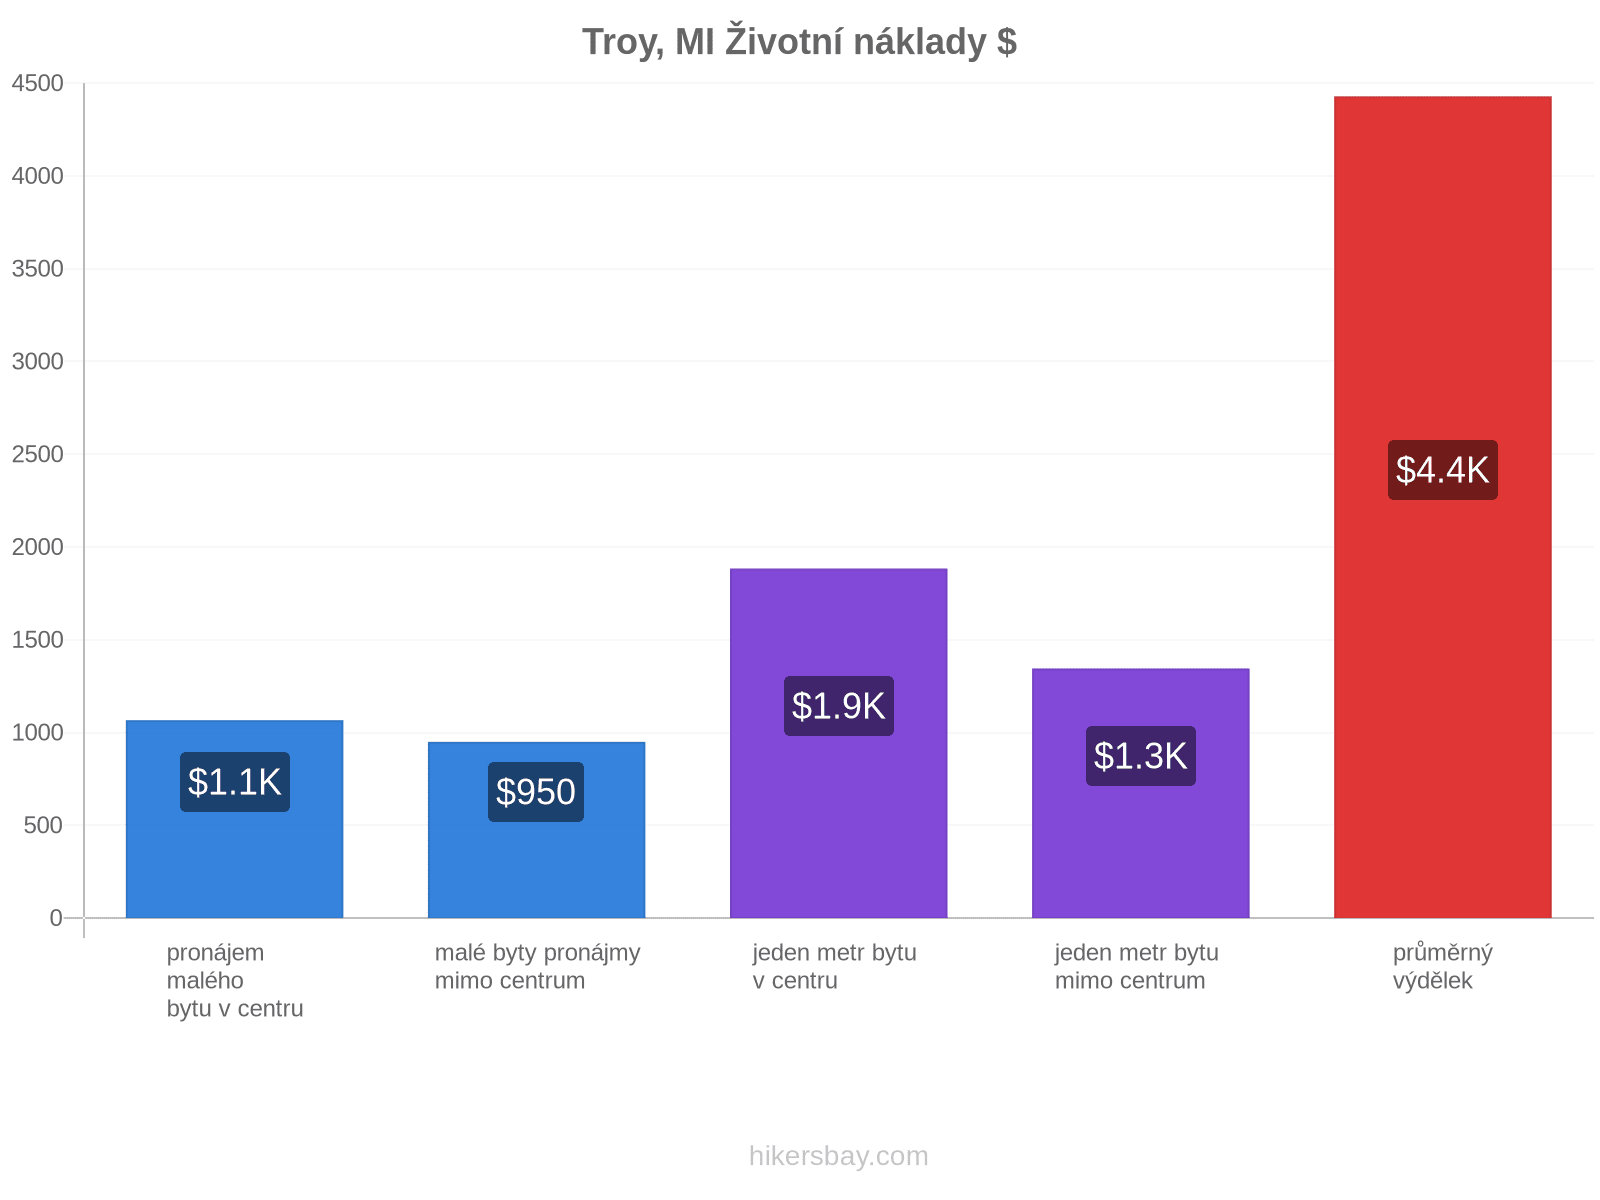 Troy, MI životní náklady hikersbay.com